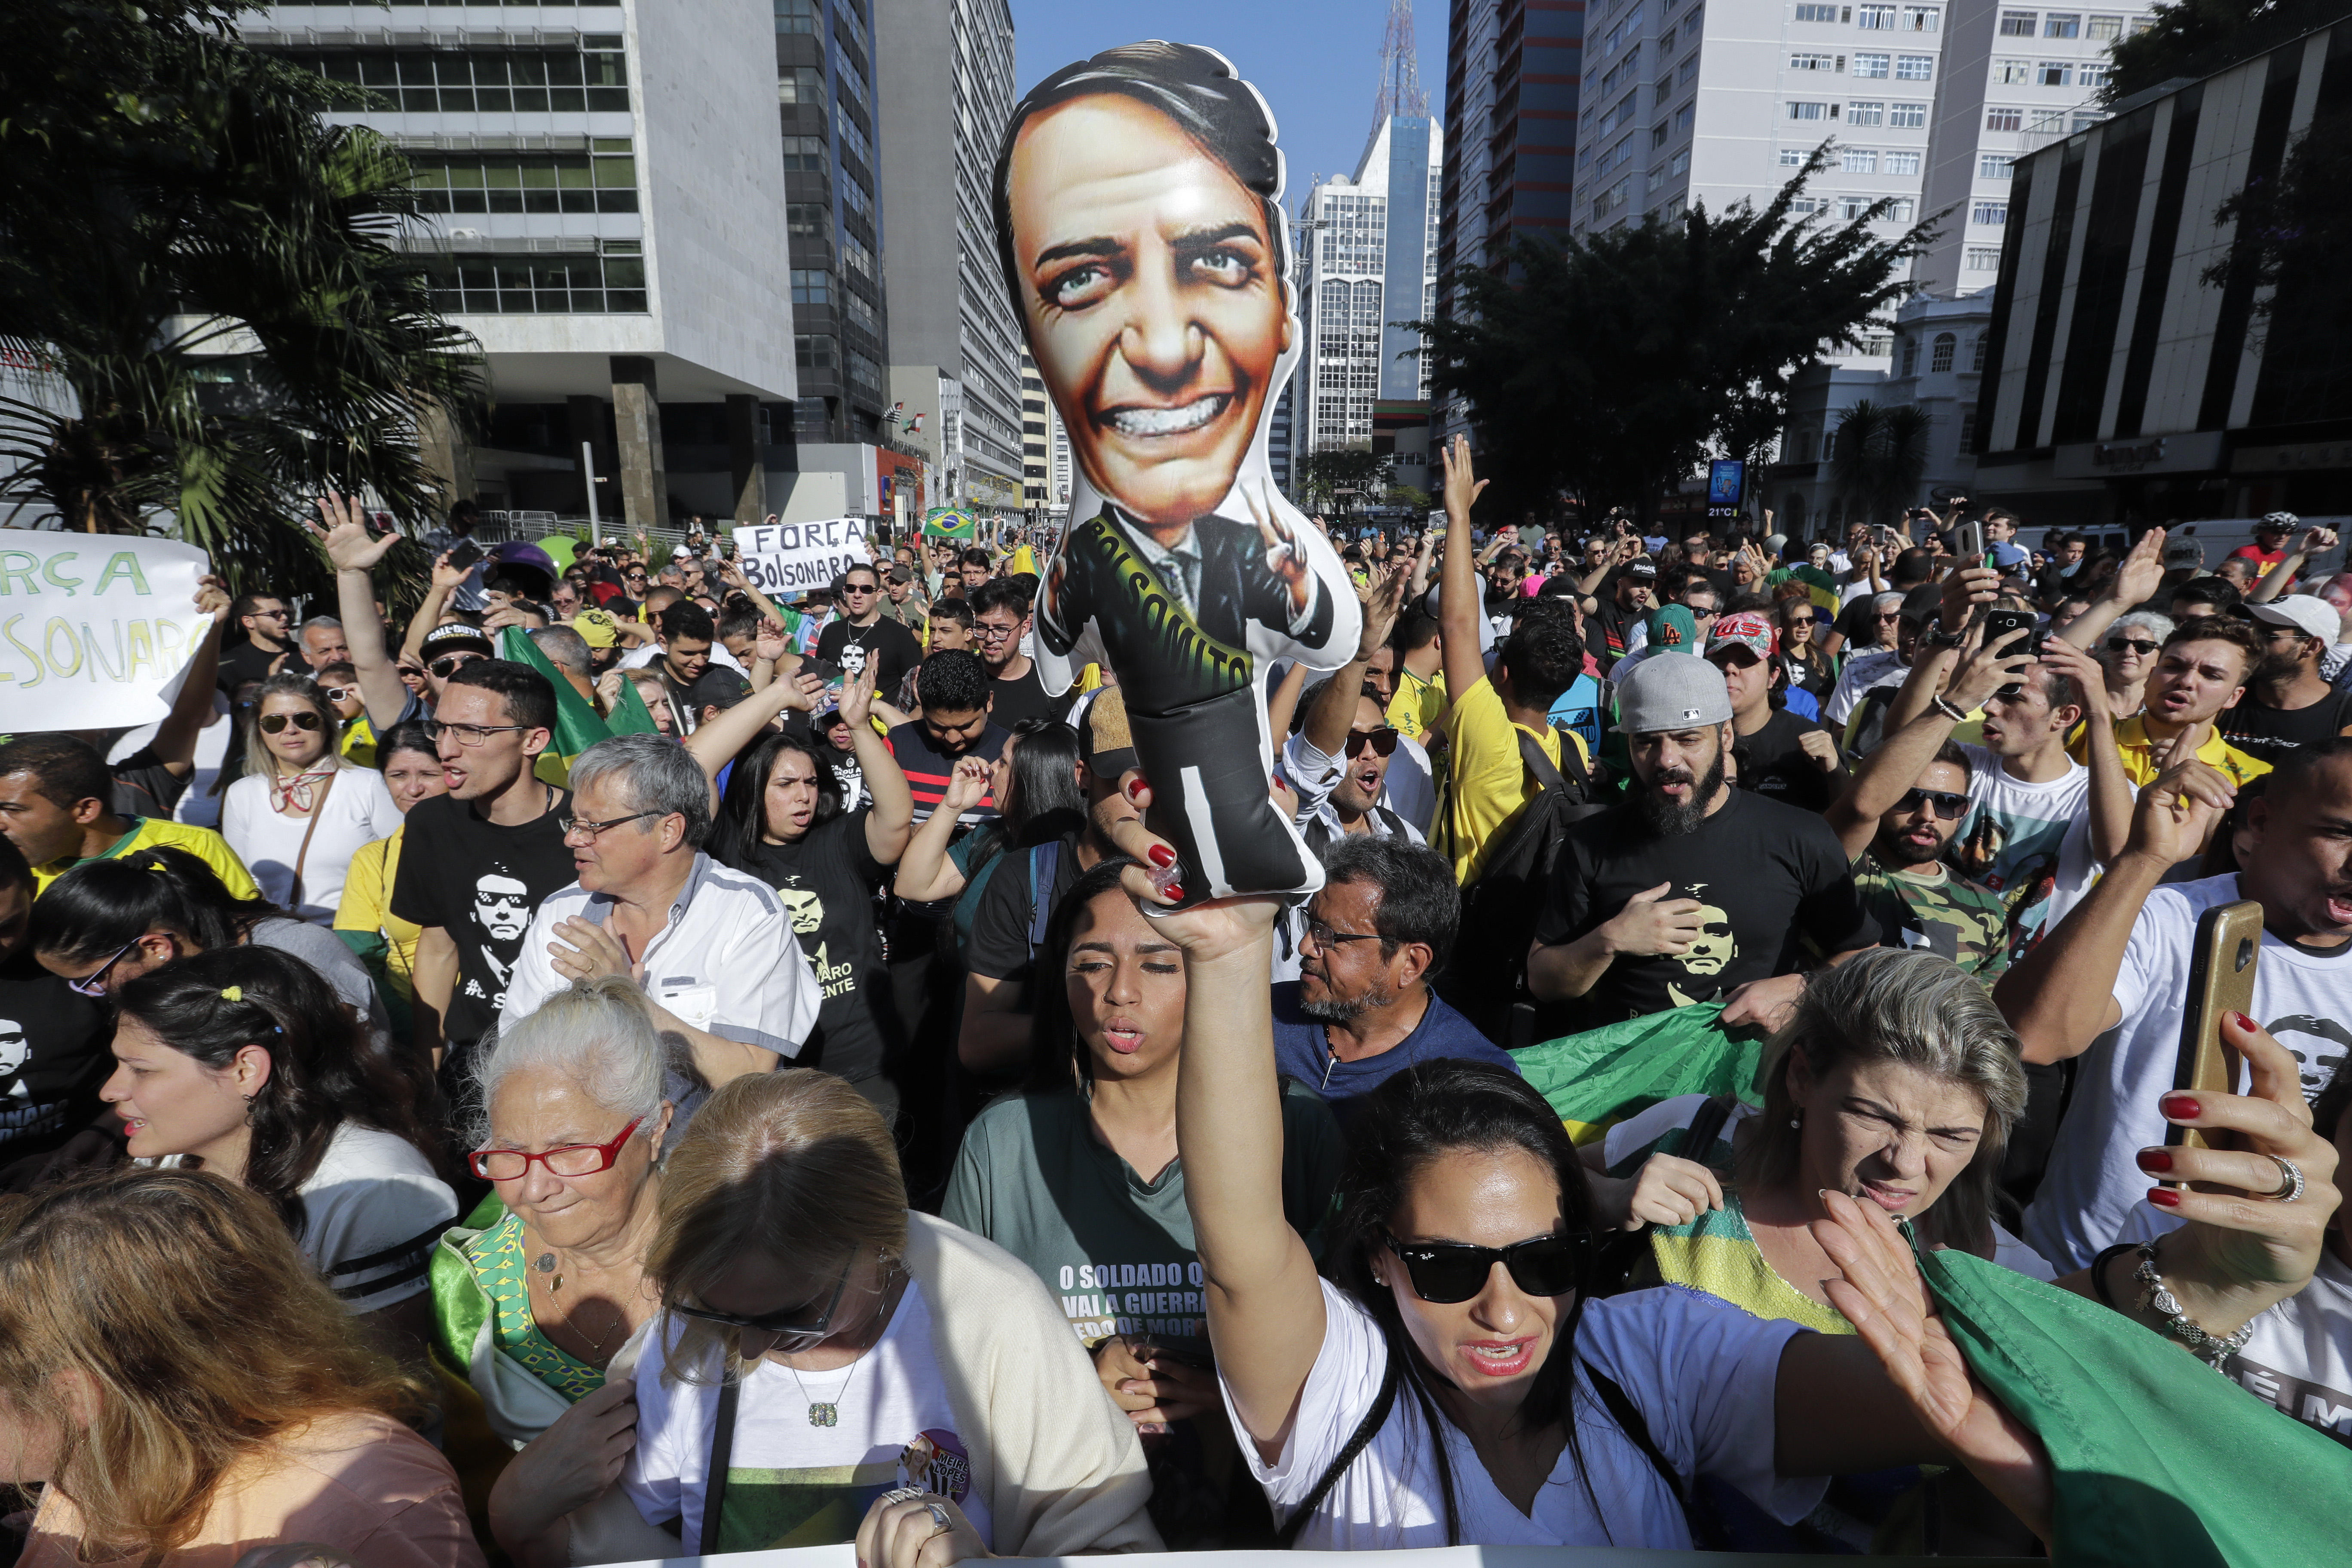 Brasil hacia polarizado duelo entre Jair Bolsonaro y Fernando Haddad (Gráfico)